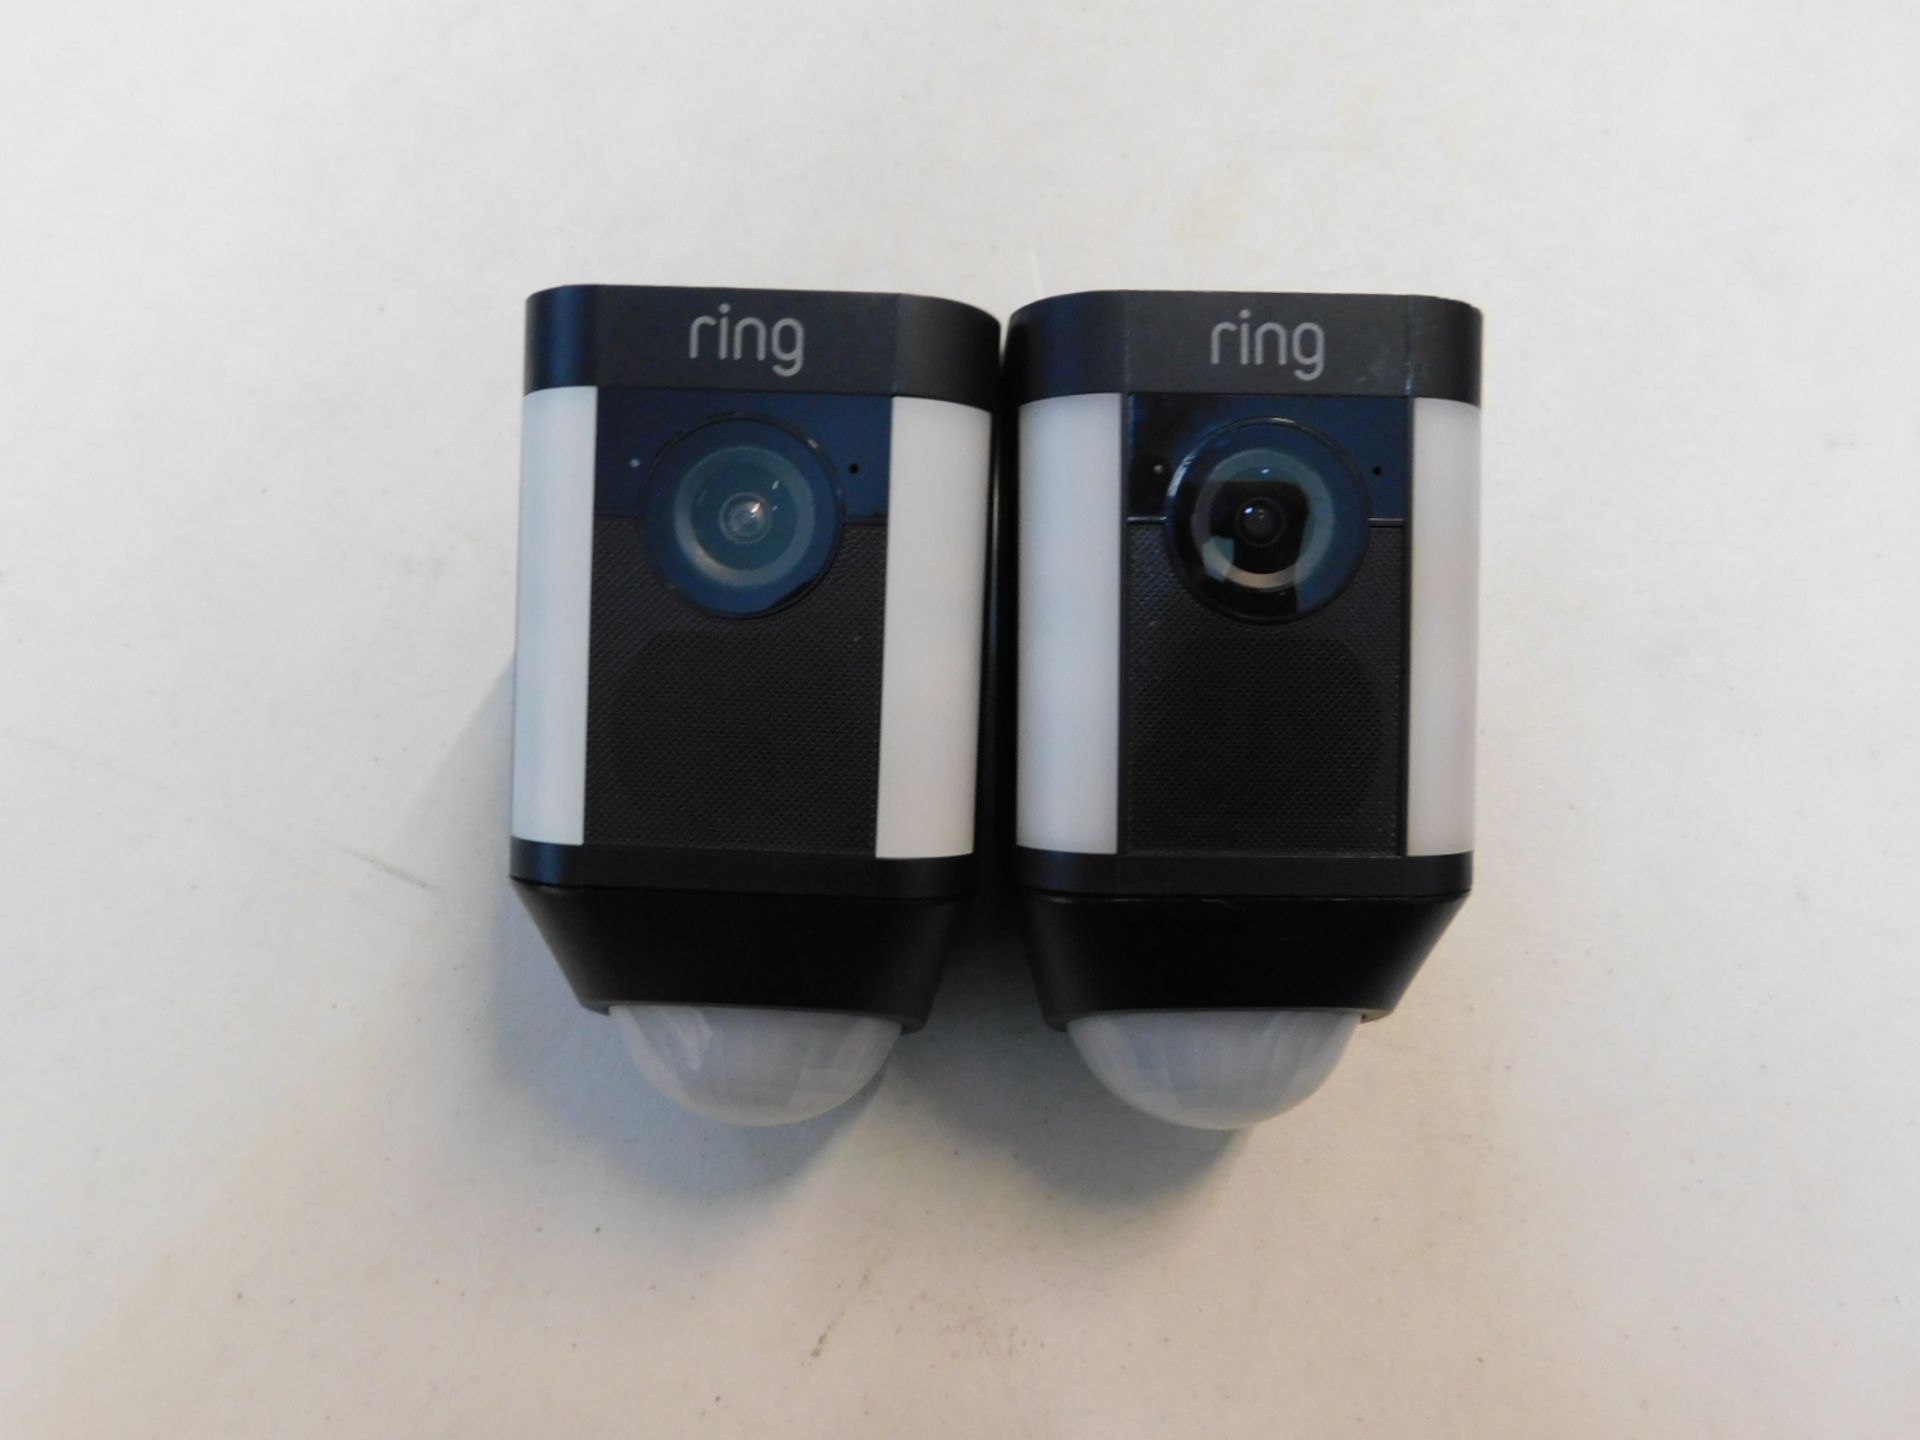 1 RING SPOTLIGHT CAM OUTDOOR SECURITY CAMERA & SPOTLIGHT 2 PACK - BLACK RRP Â£349.99